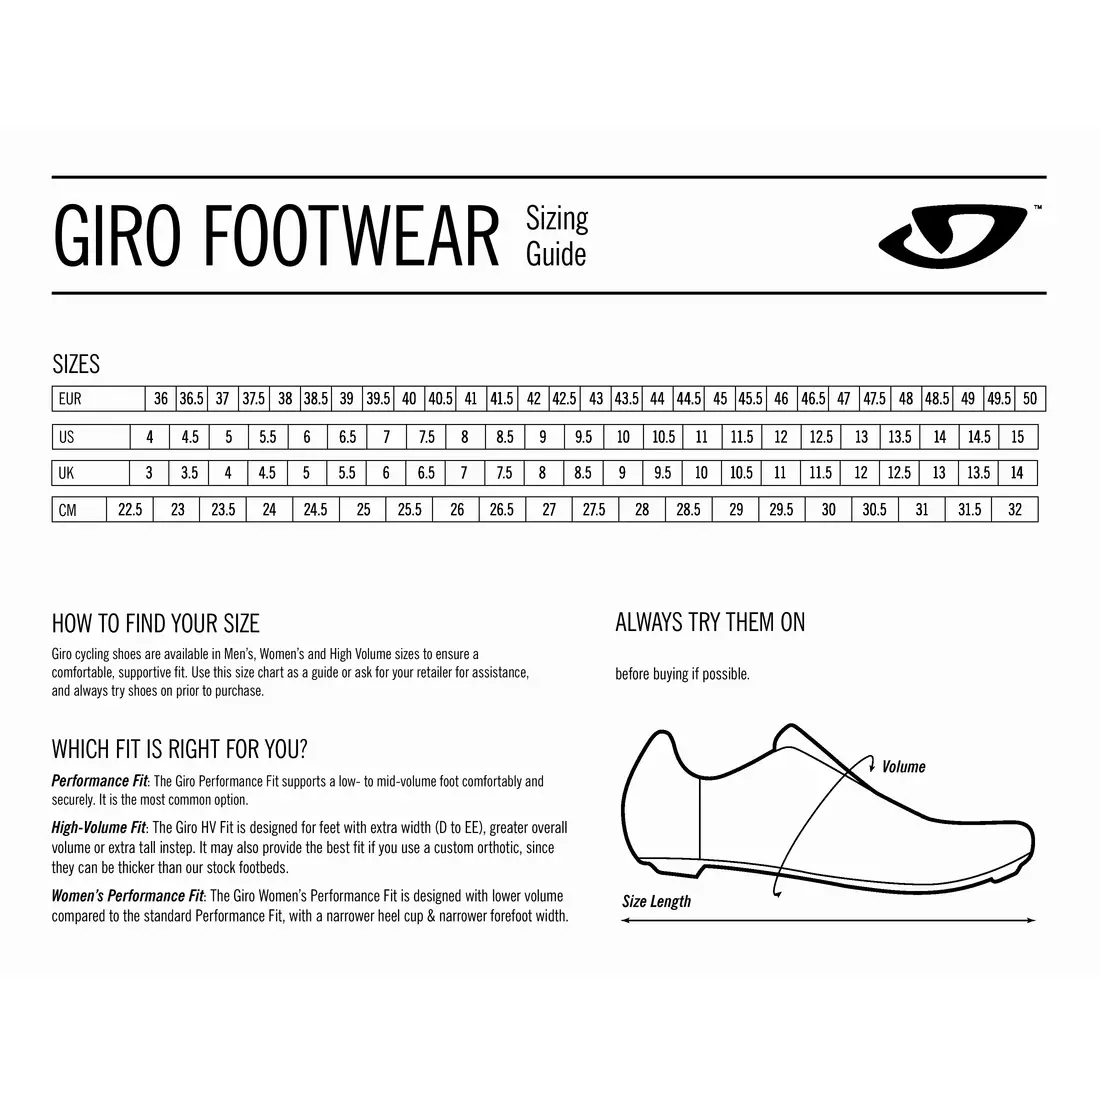 GIRO pantofi de ciclism pentru bărbați TERRADURO BOA blue jewel GR-7110918